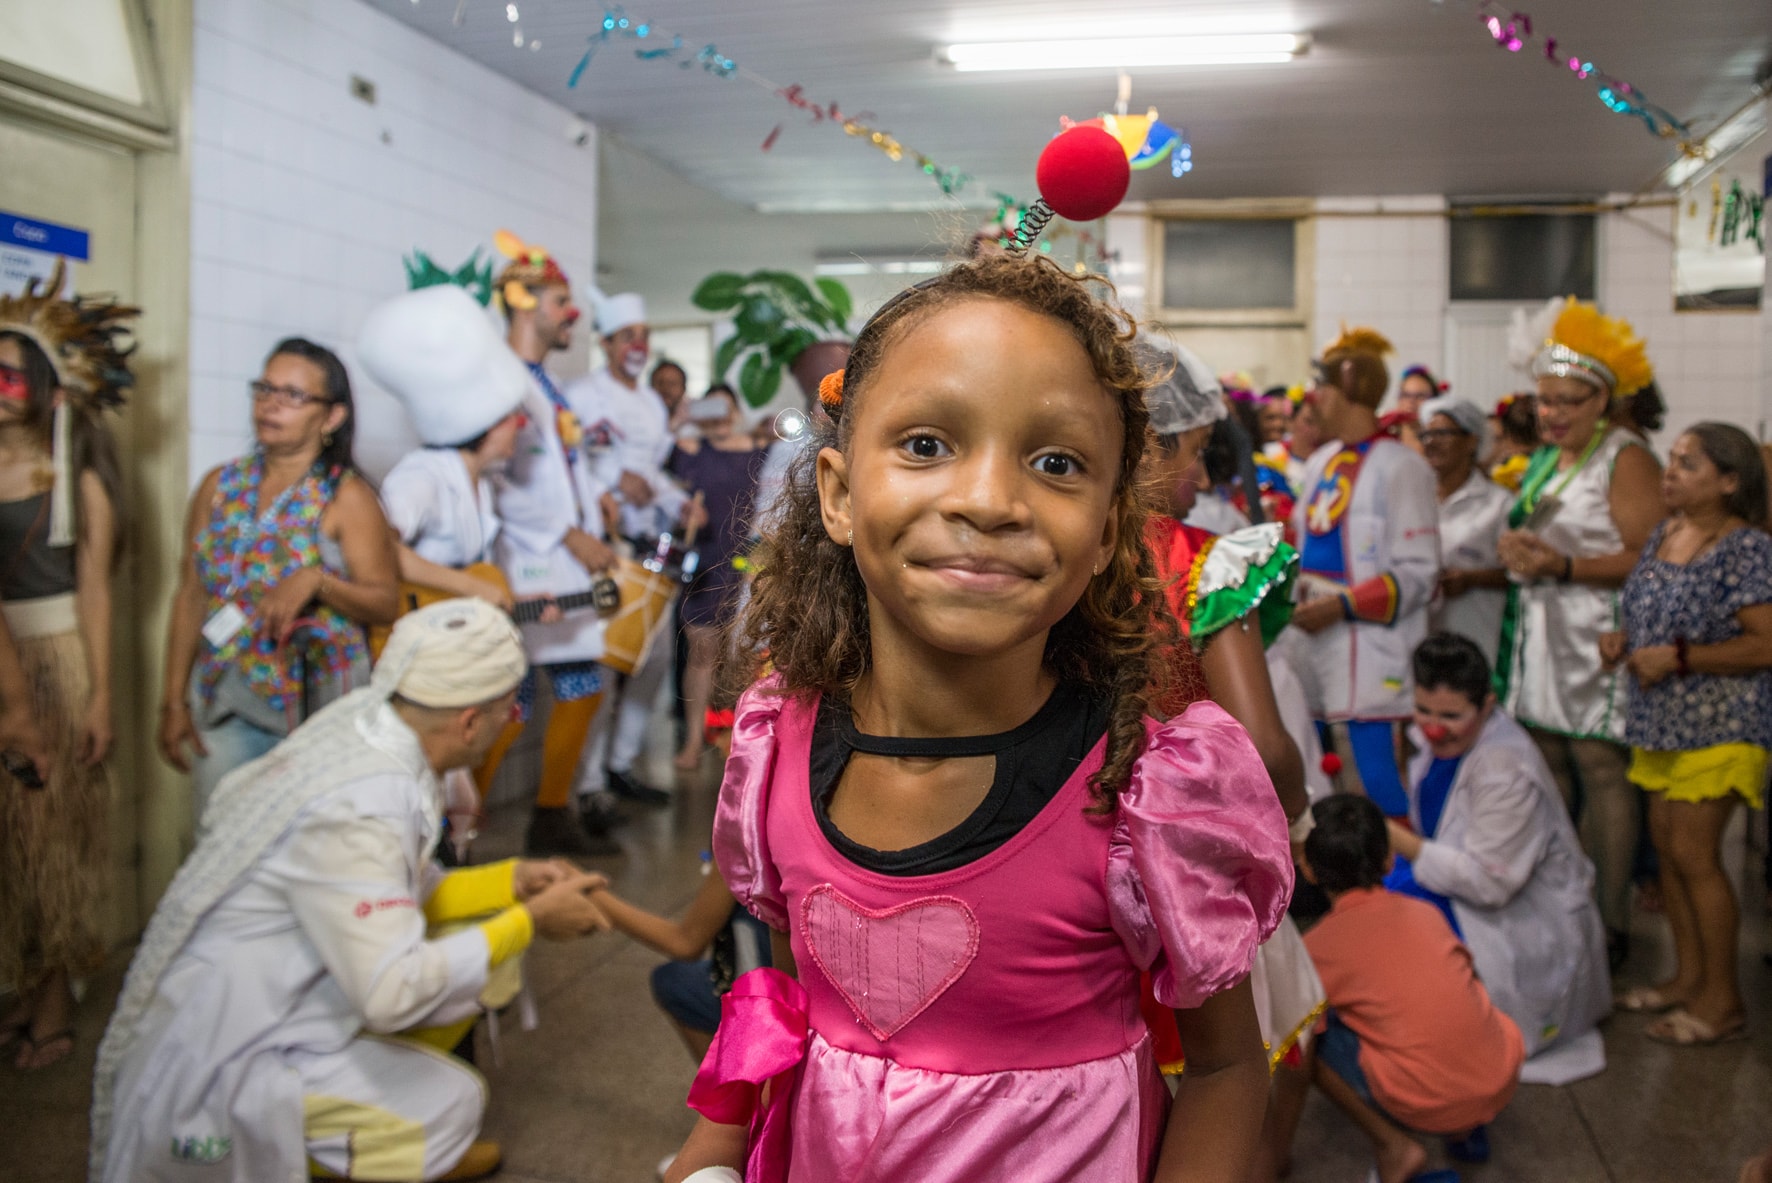 Doutores da Alegria celebra carnaval com três blocos em hospitais públicos